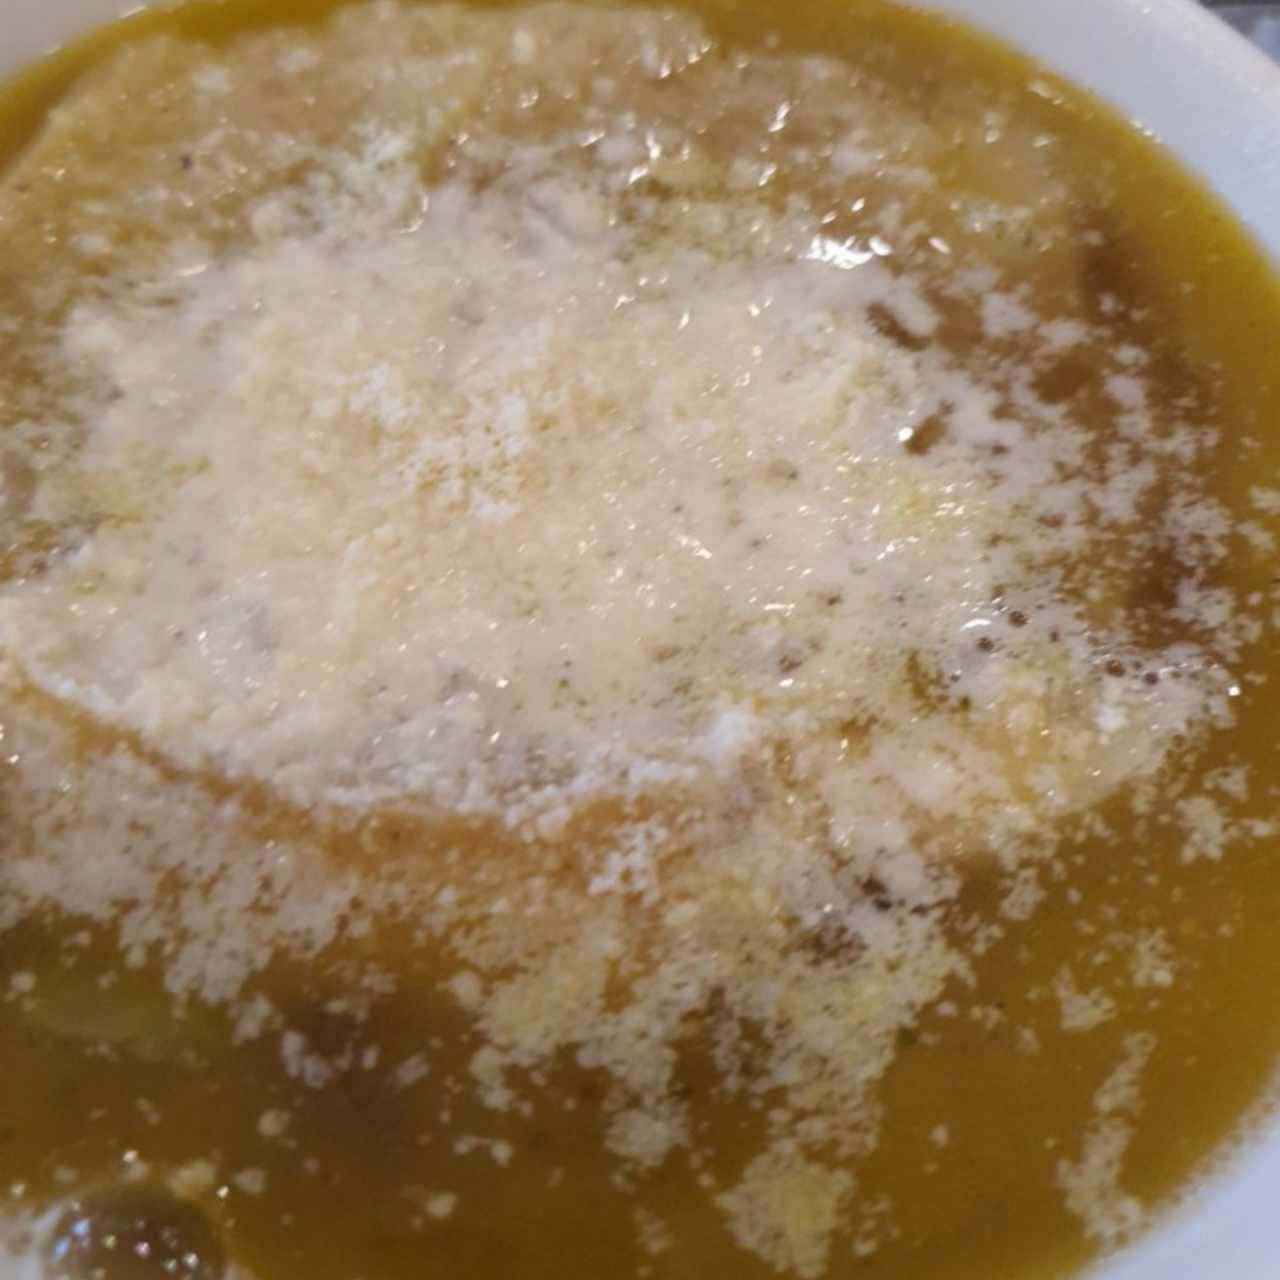 sopa de cebolla 